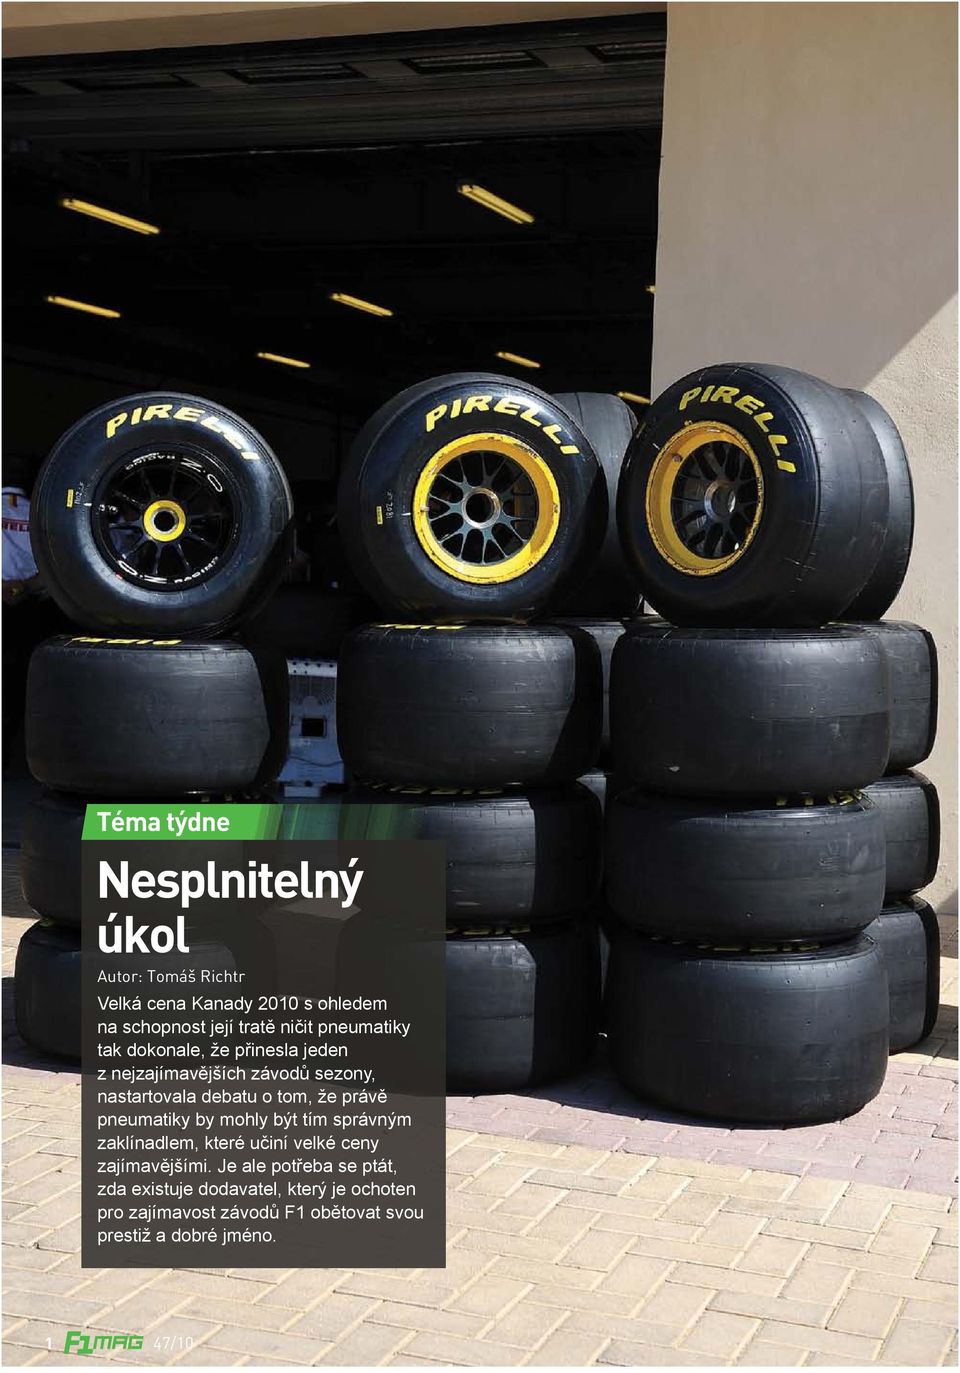 že právě pneumatiky by mohly být tím správným zaklínadlem, které učiní velké ceny zajímavějšími.